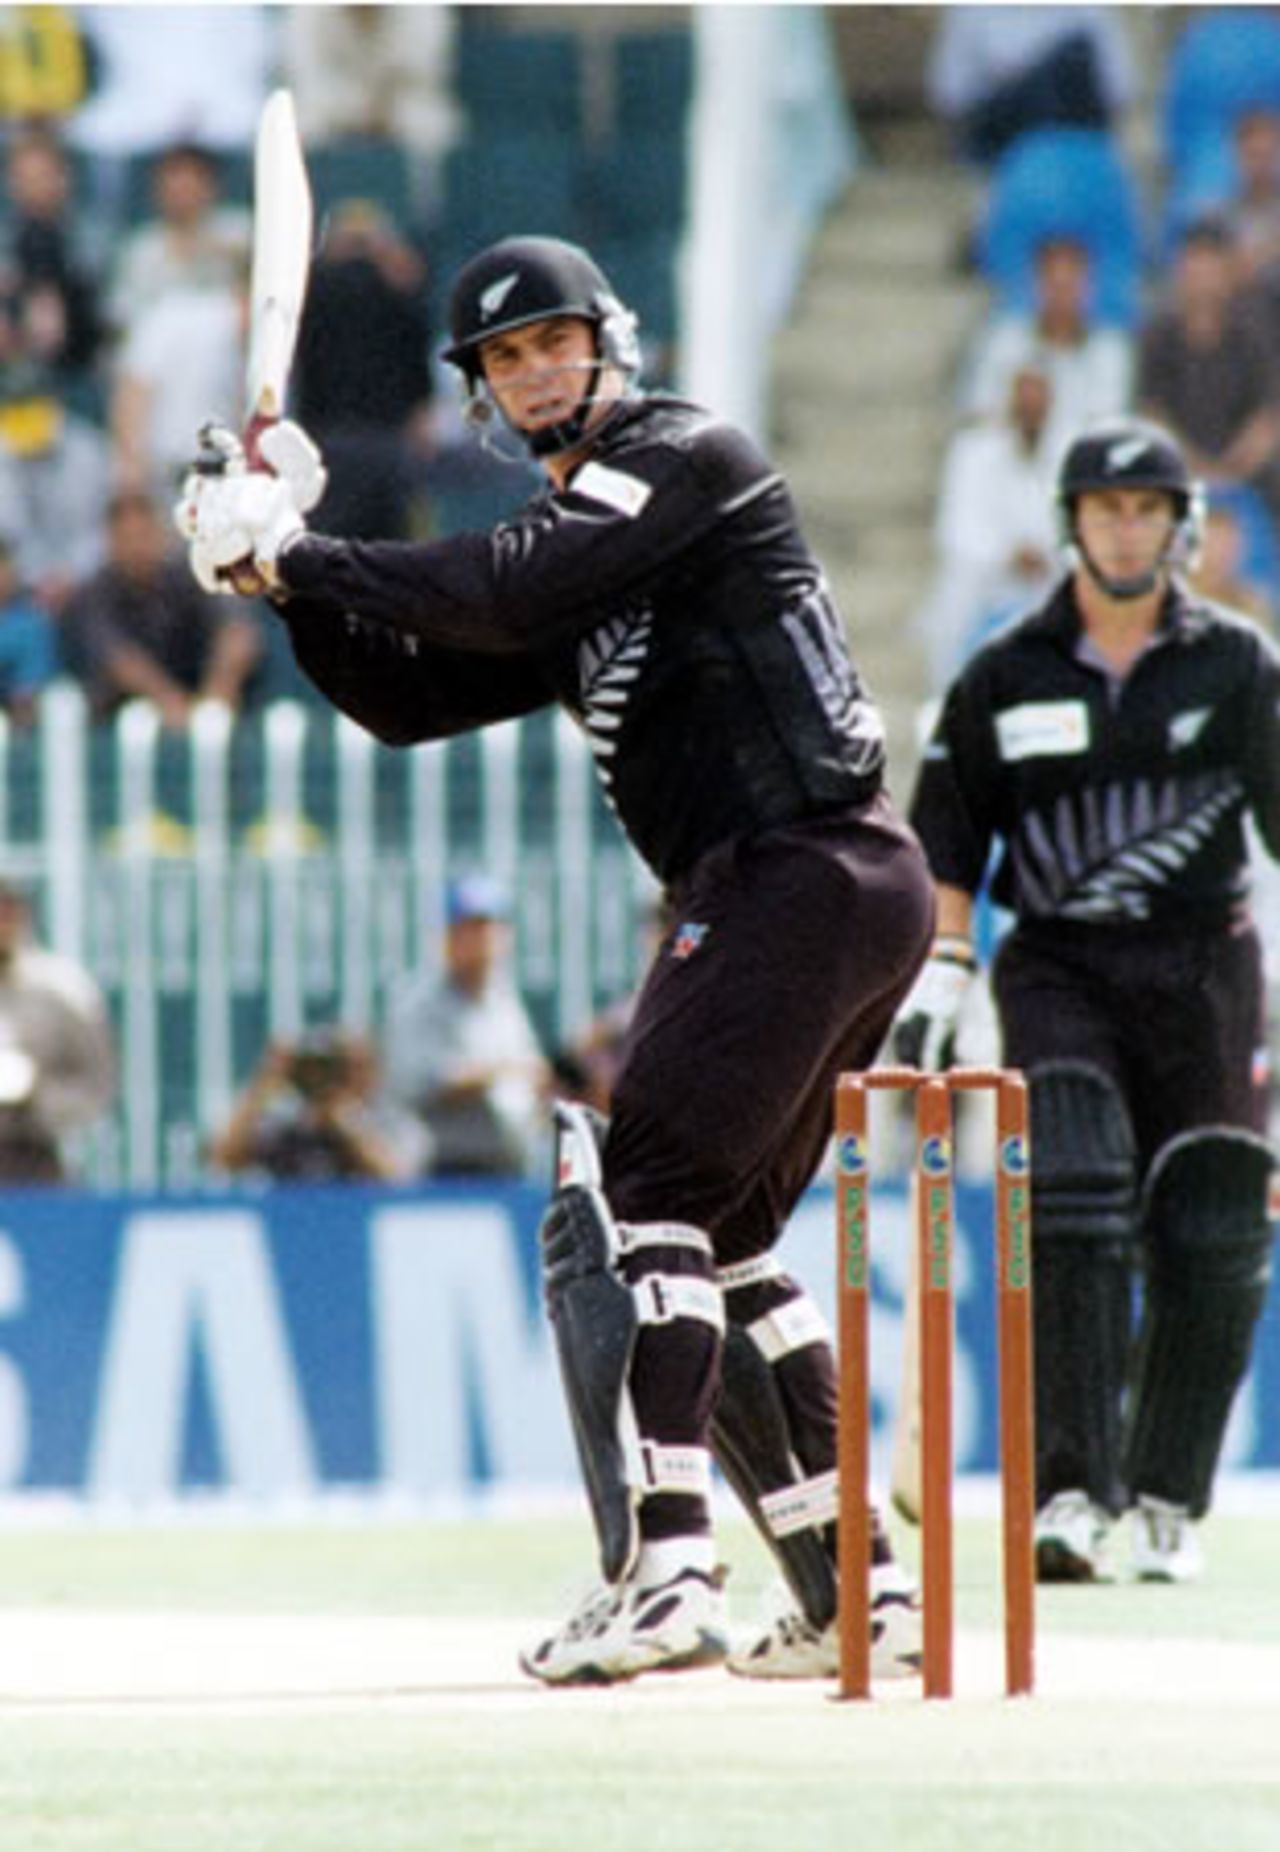 Matt Horne flicks one to fine leg - 2nd ODI at Rawalpindi, New Zealand v Pakistan, 24 Apr 2002